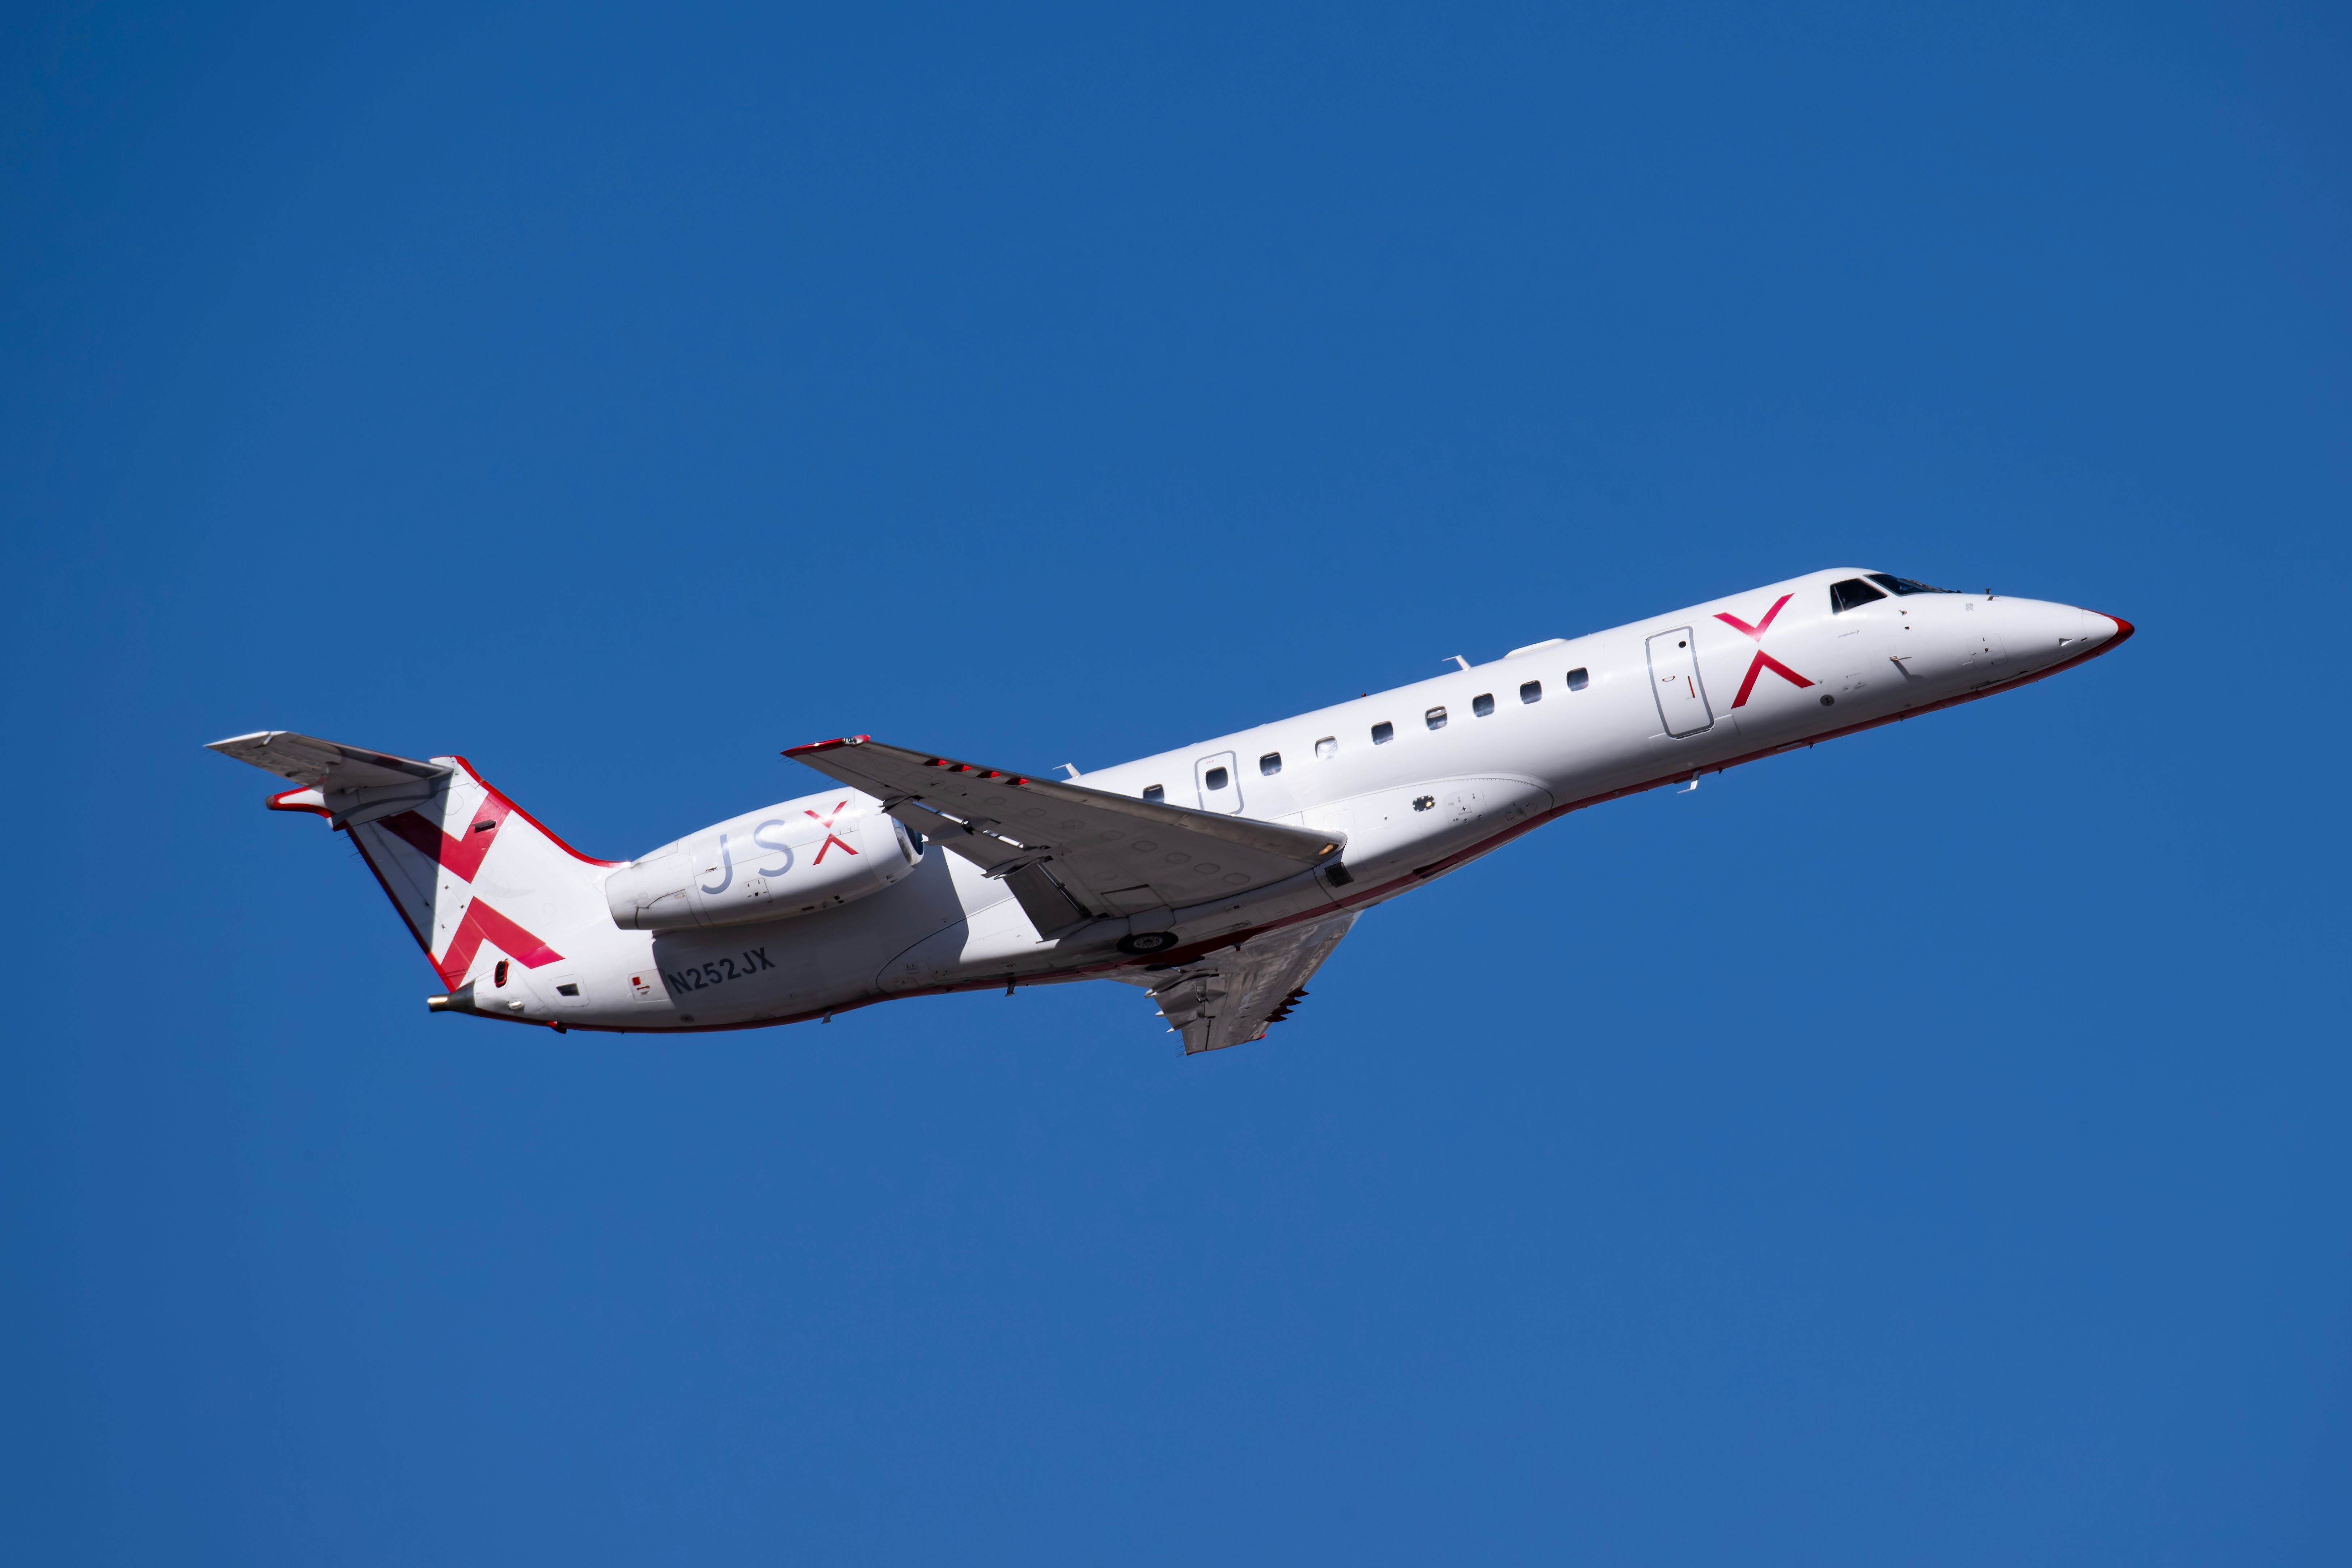 JSX Embraer ERJ-135 taking off.